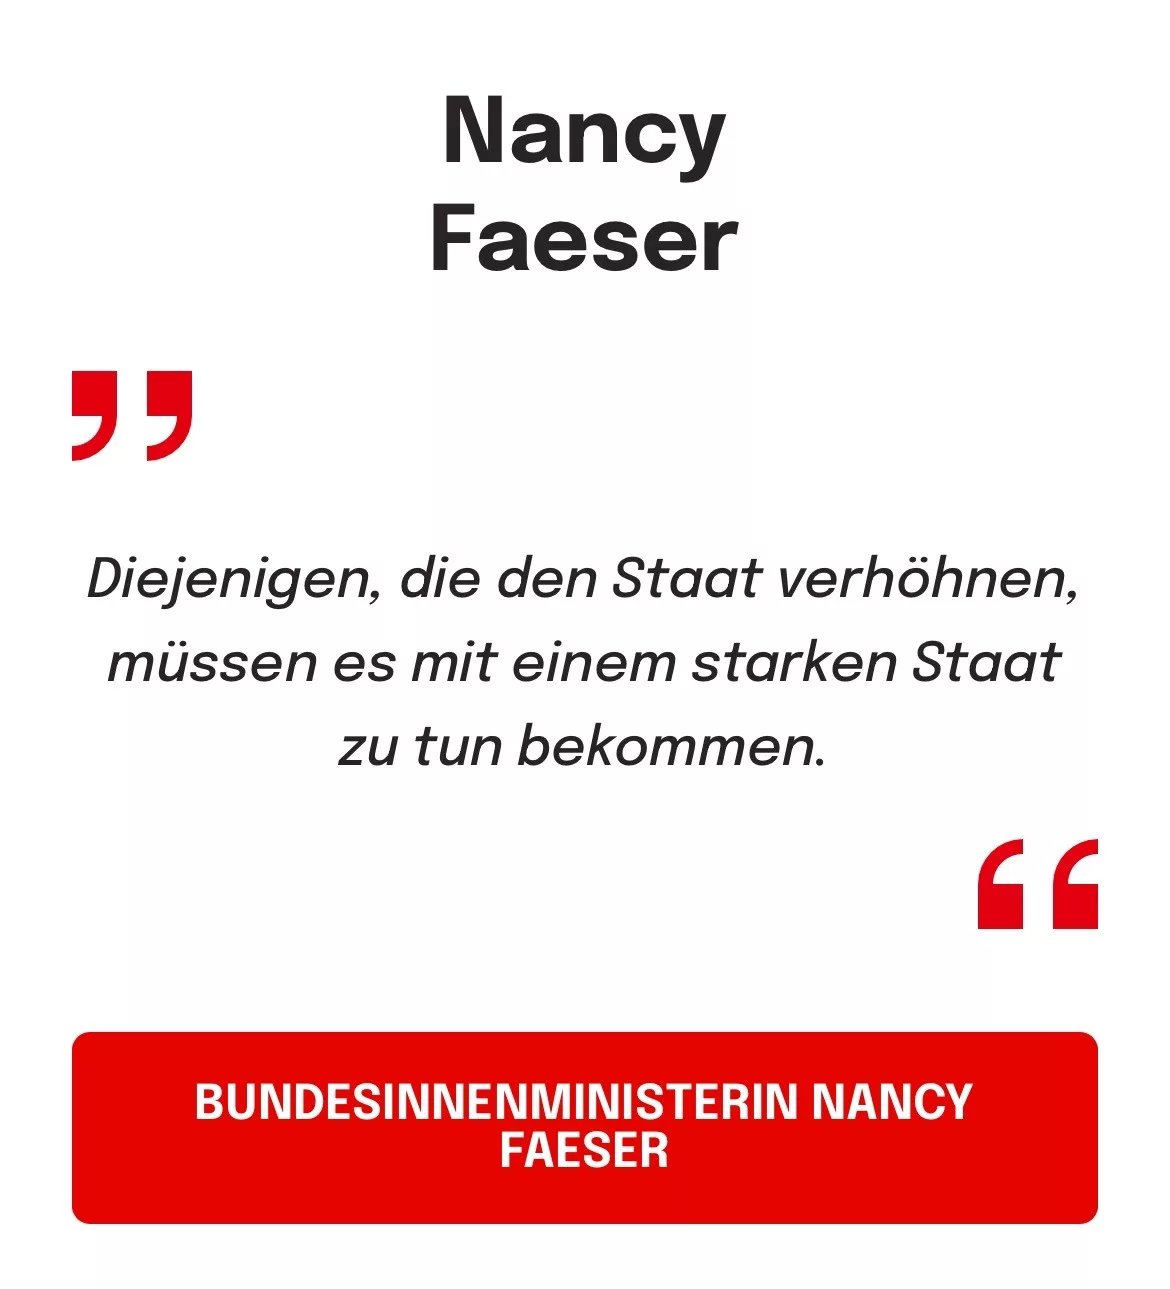 Bundesinnennministerin Nancy Faeser: Diejenigen, die den Staat verhöhnen, müssen es mit einem starken Staat zu tun bekommen.